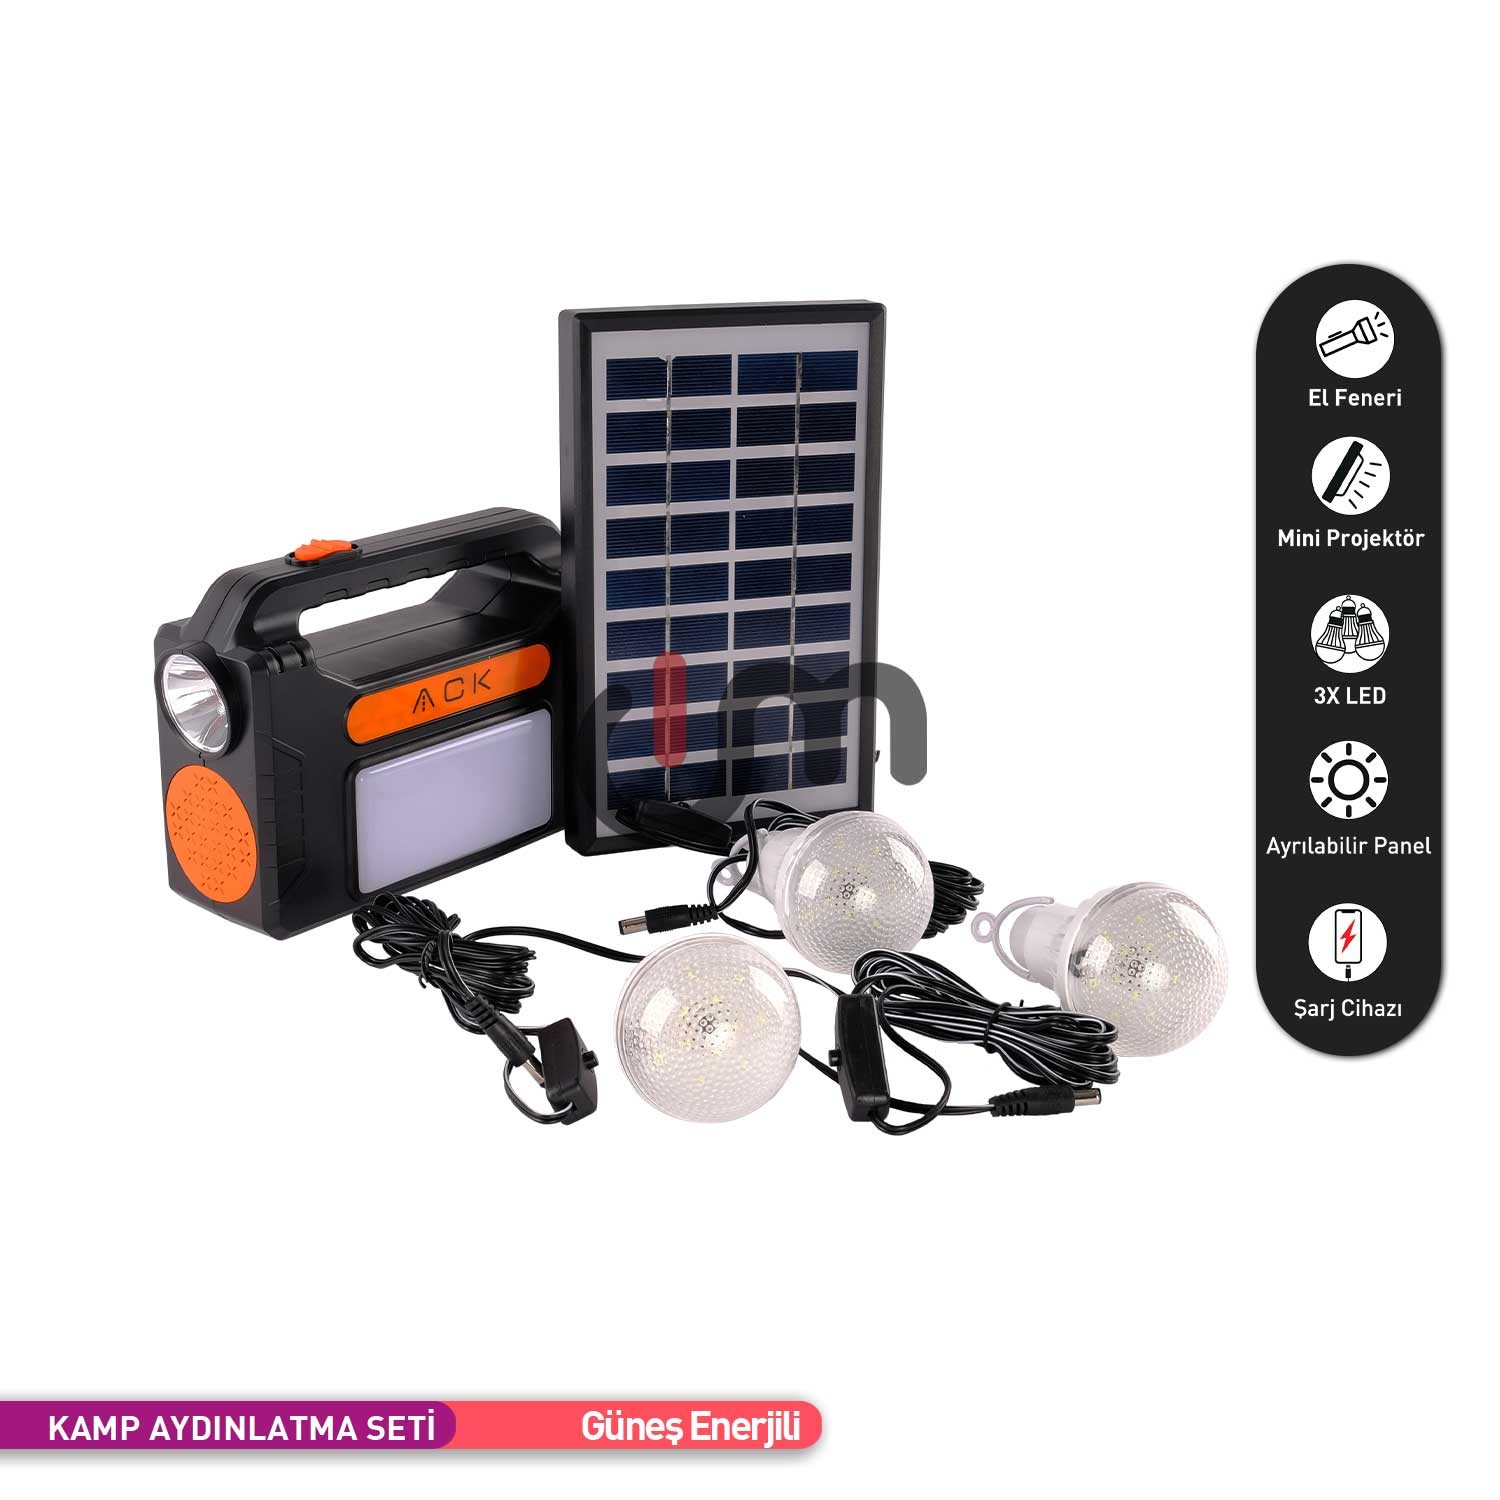 ACK Güneş Enerjili Kamp Aydınlatma Seti 3 Adet Lambalı Şarjlı Projektör ve Fener